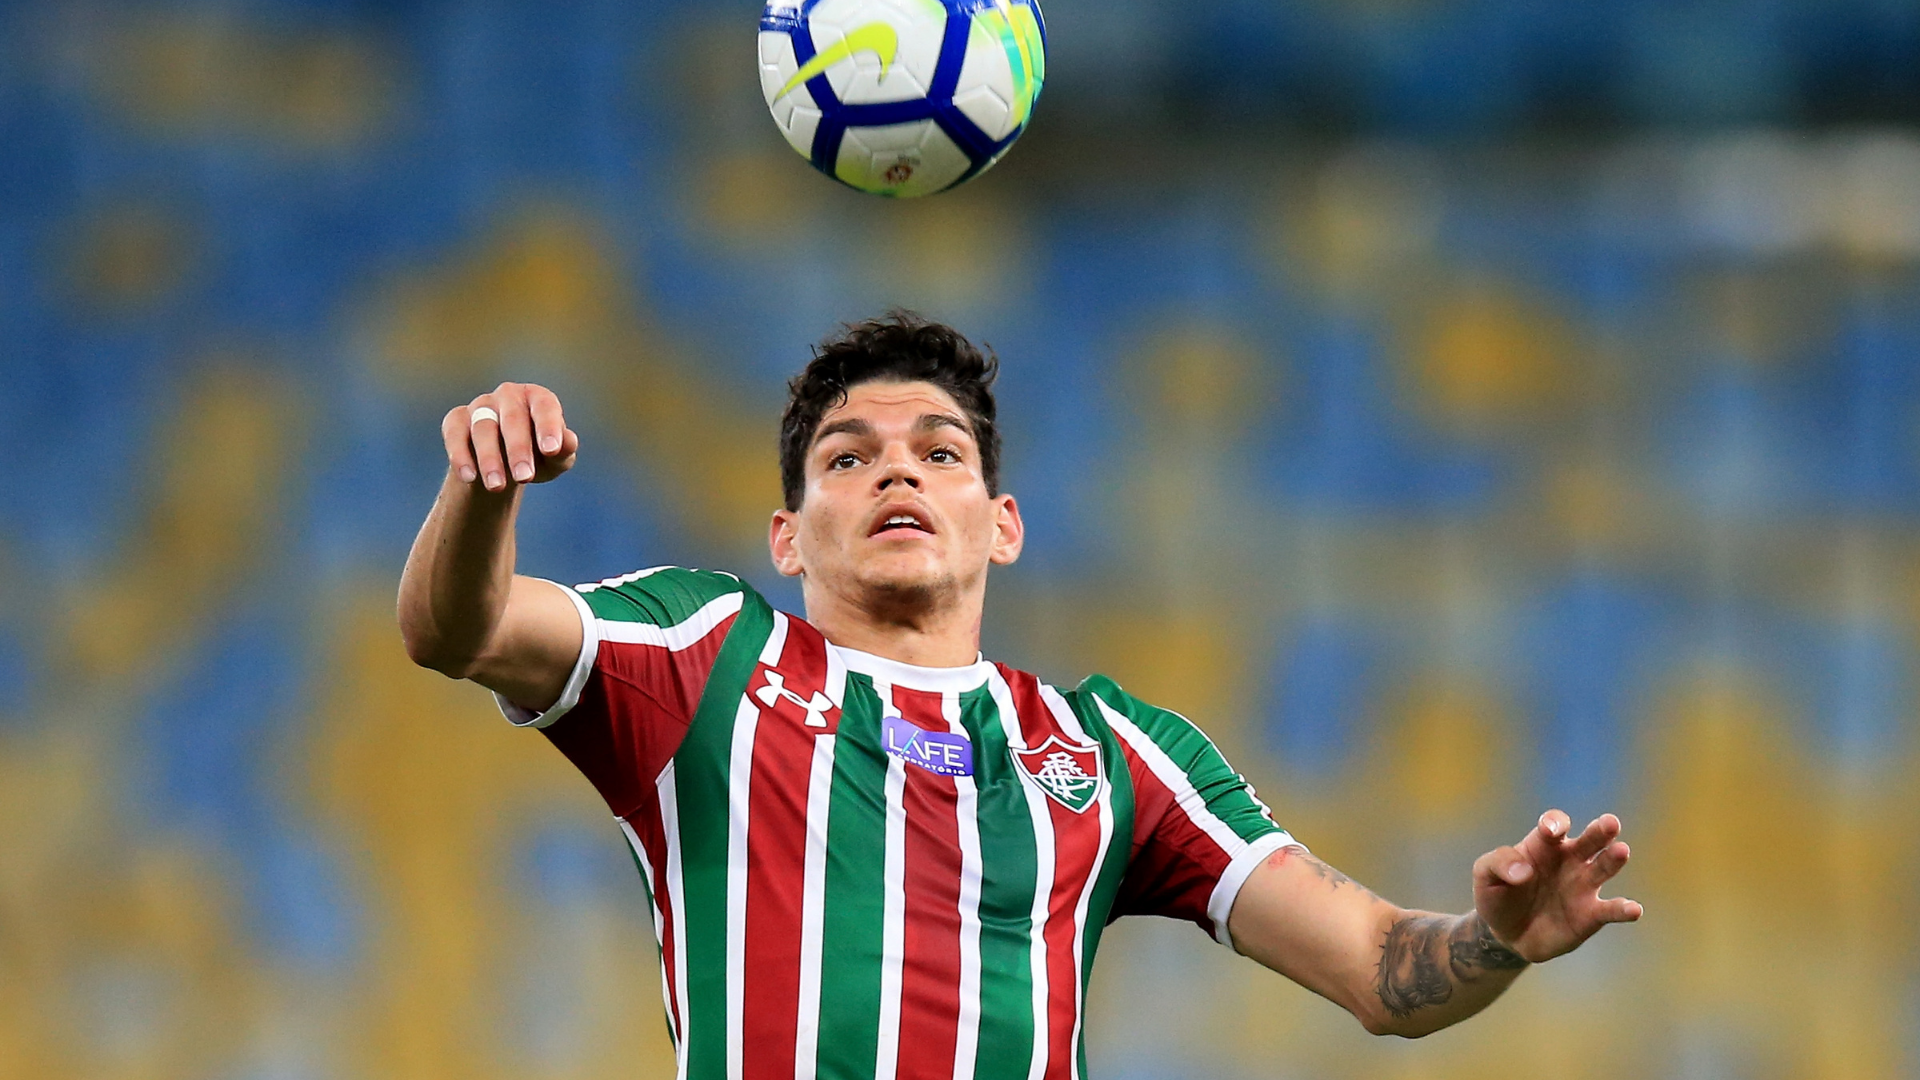 Ayrton Lucas é o novo reforço do Flamengo